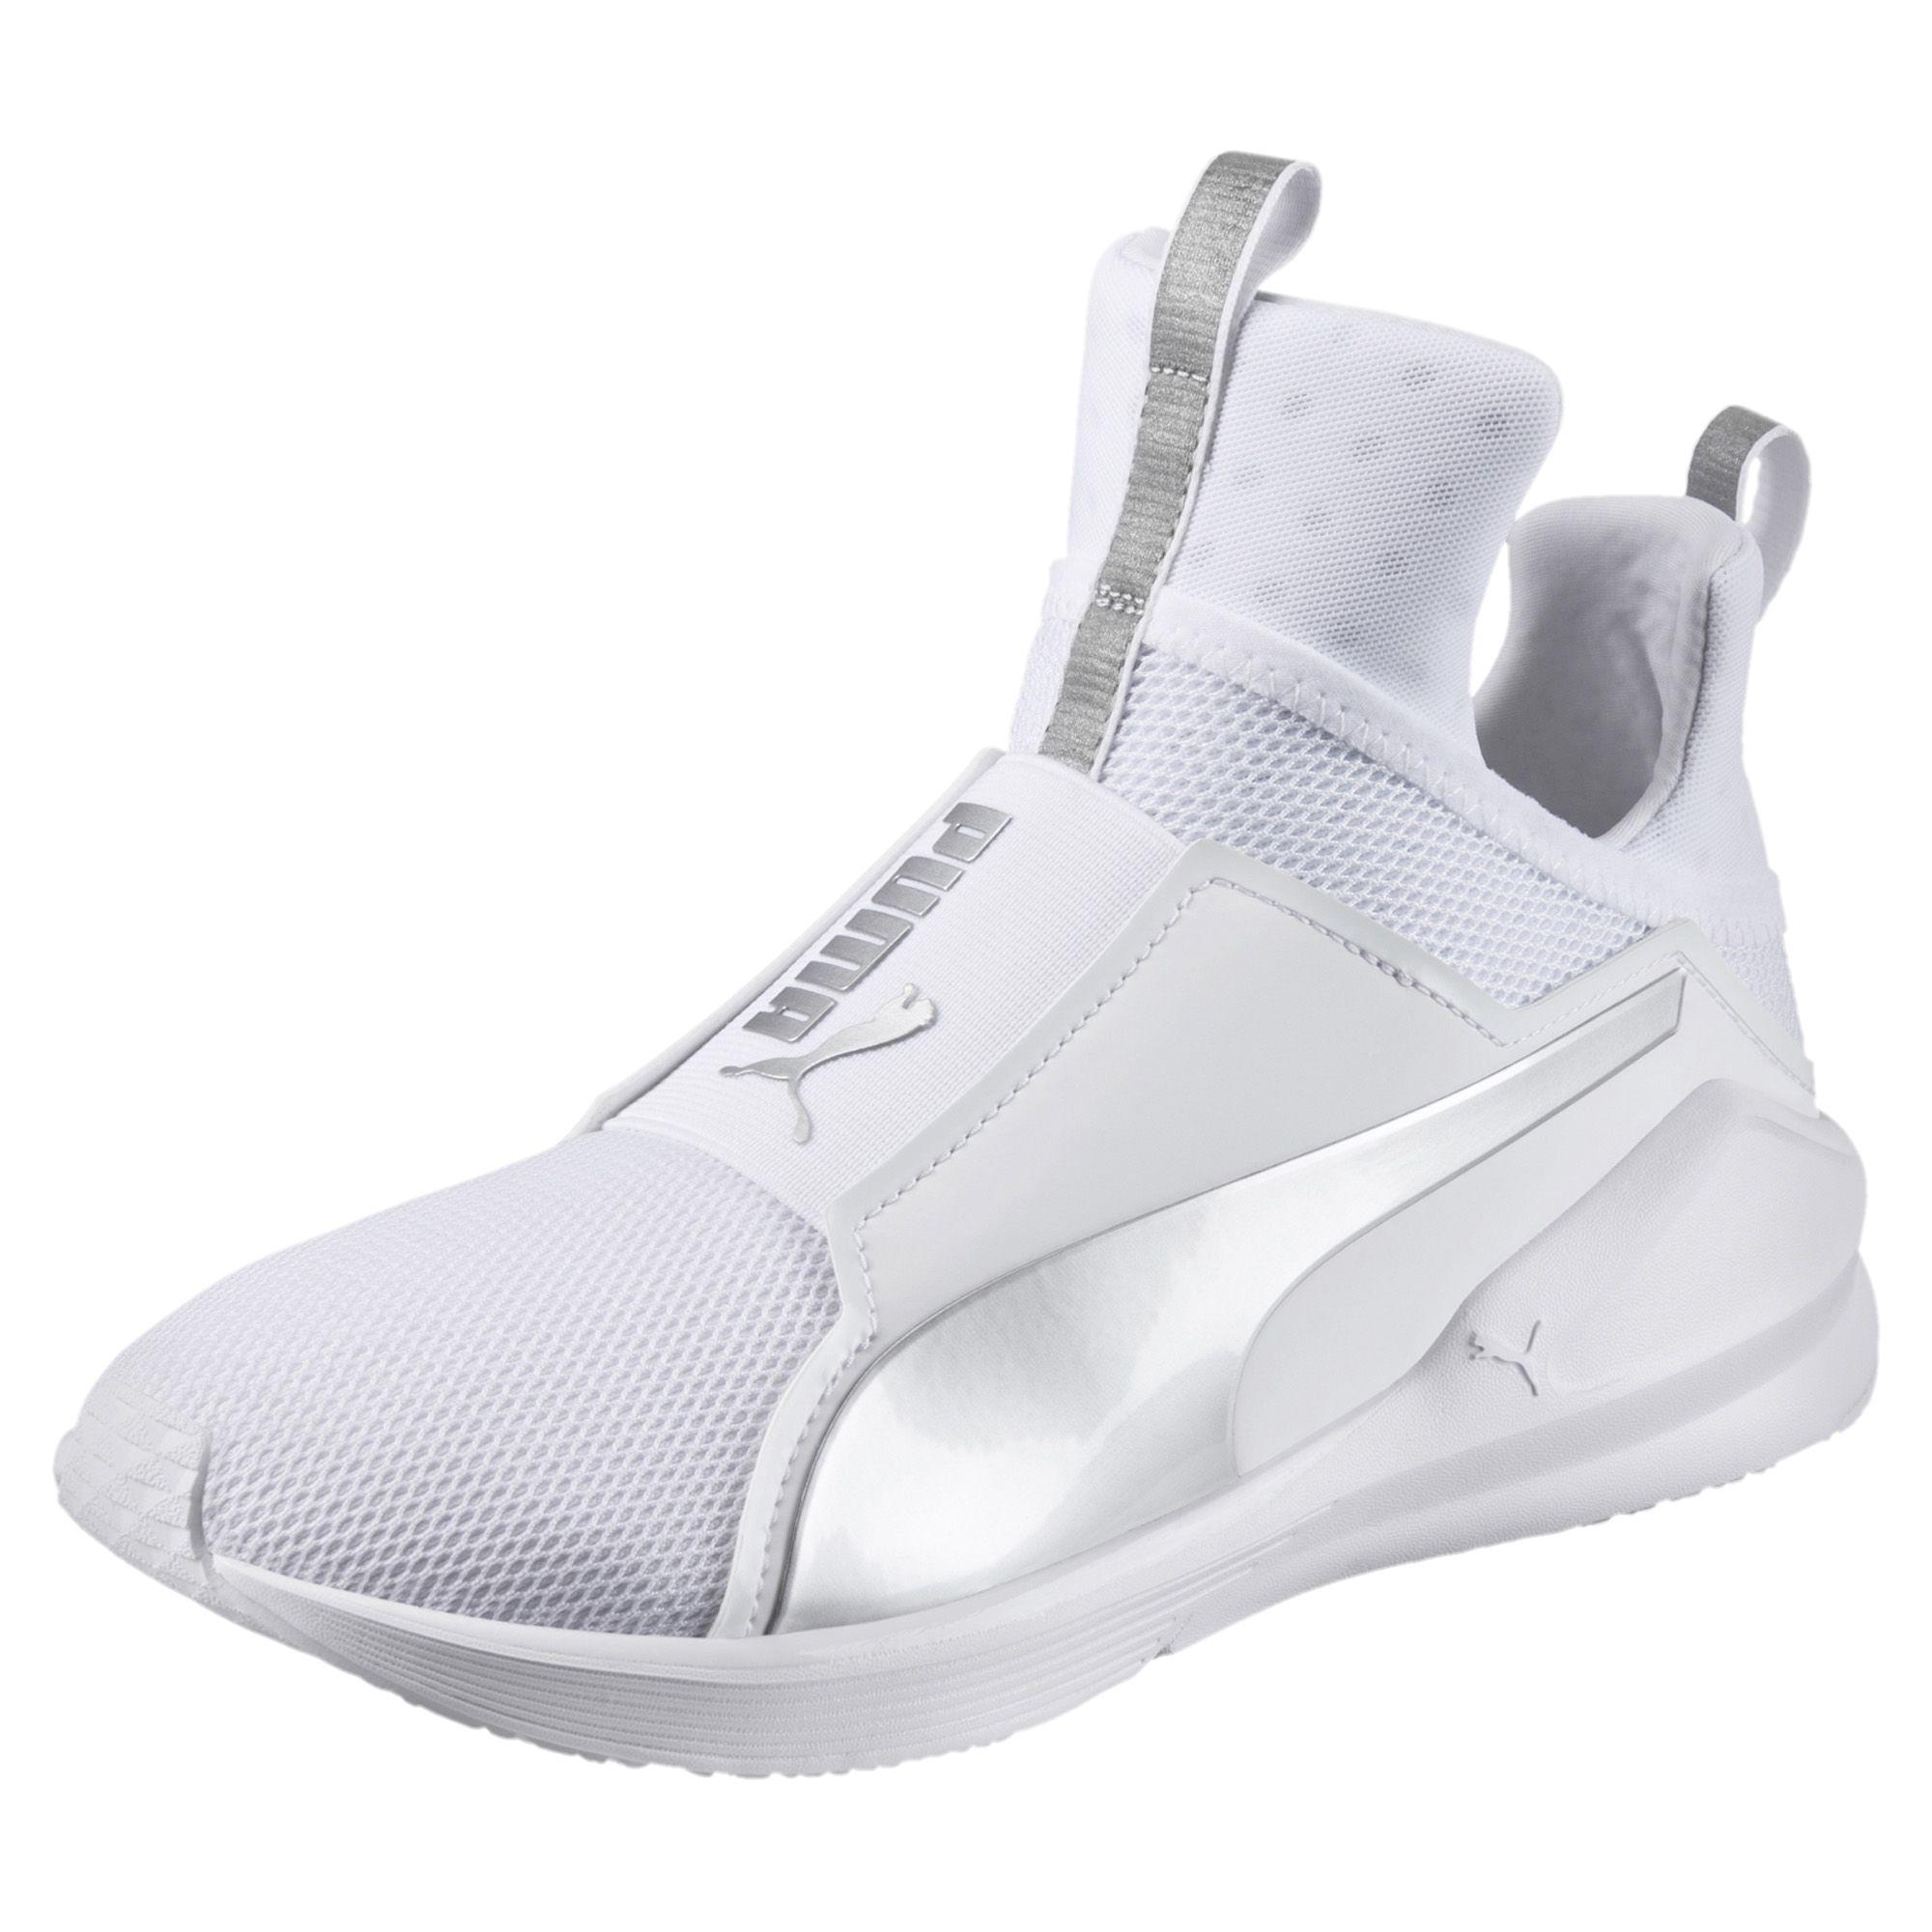 Lyst - Puma Fierce Core Women's Training Shoes in White